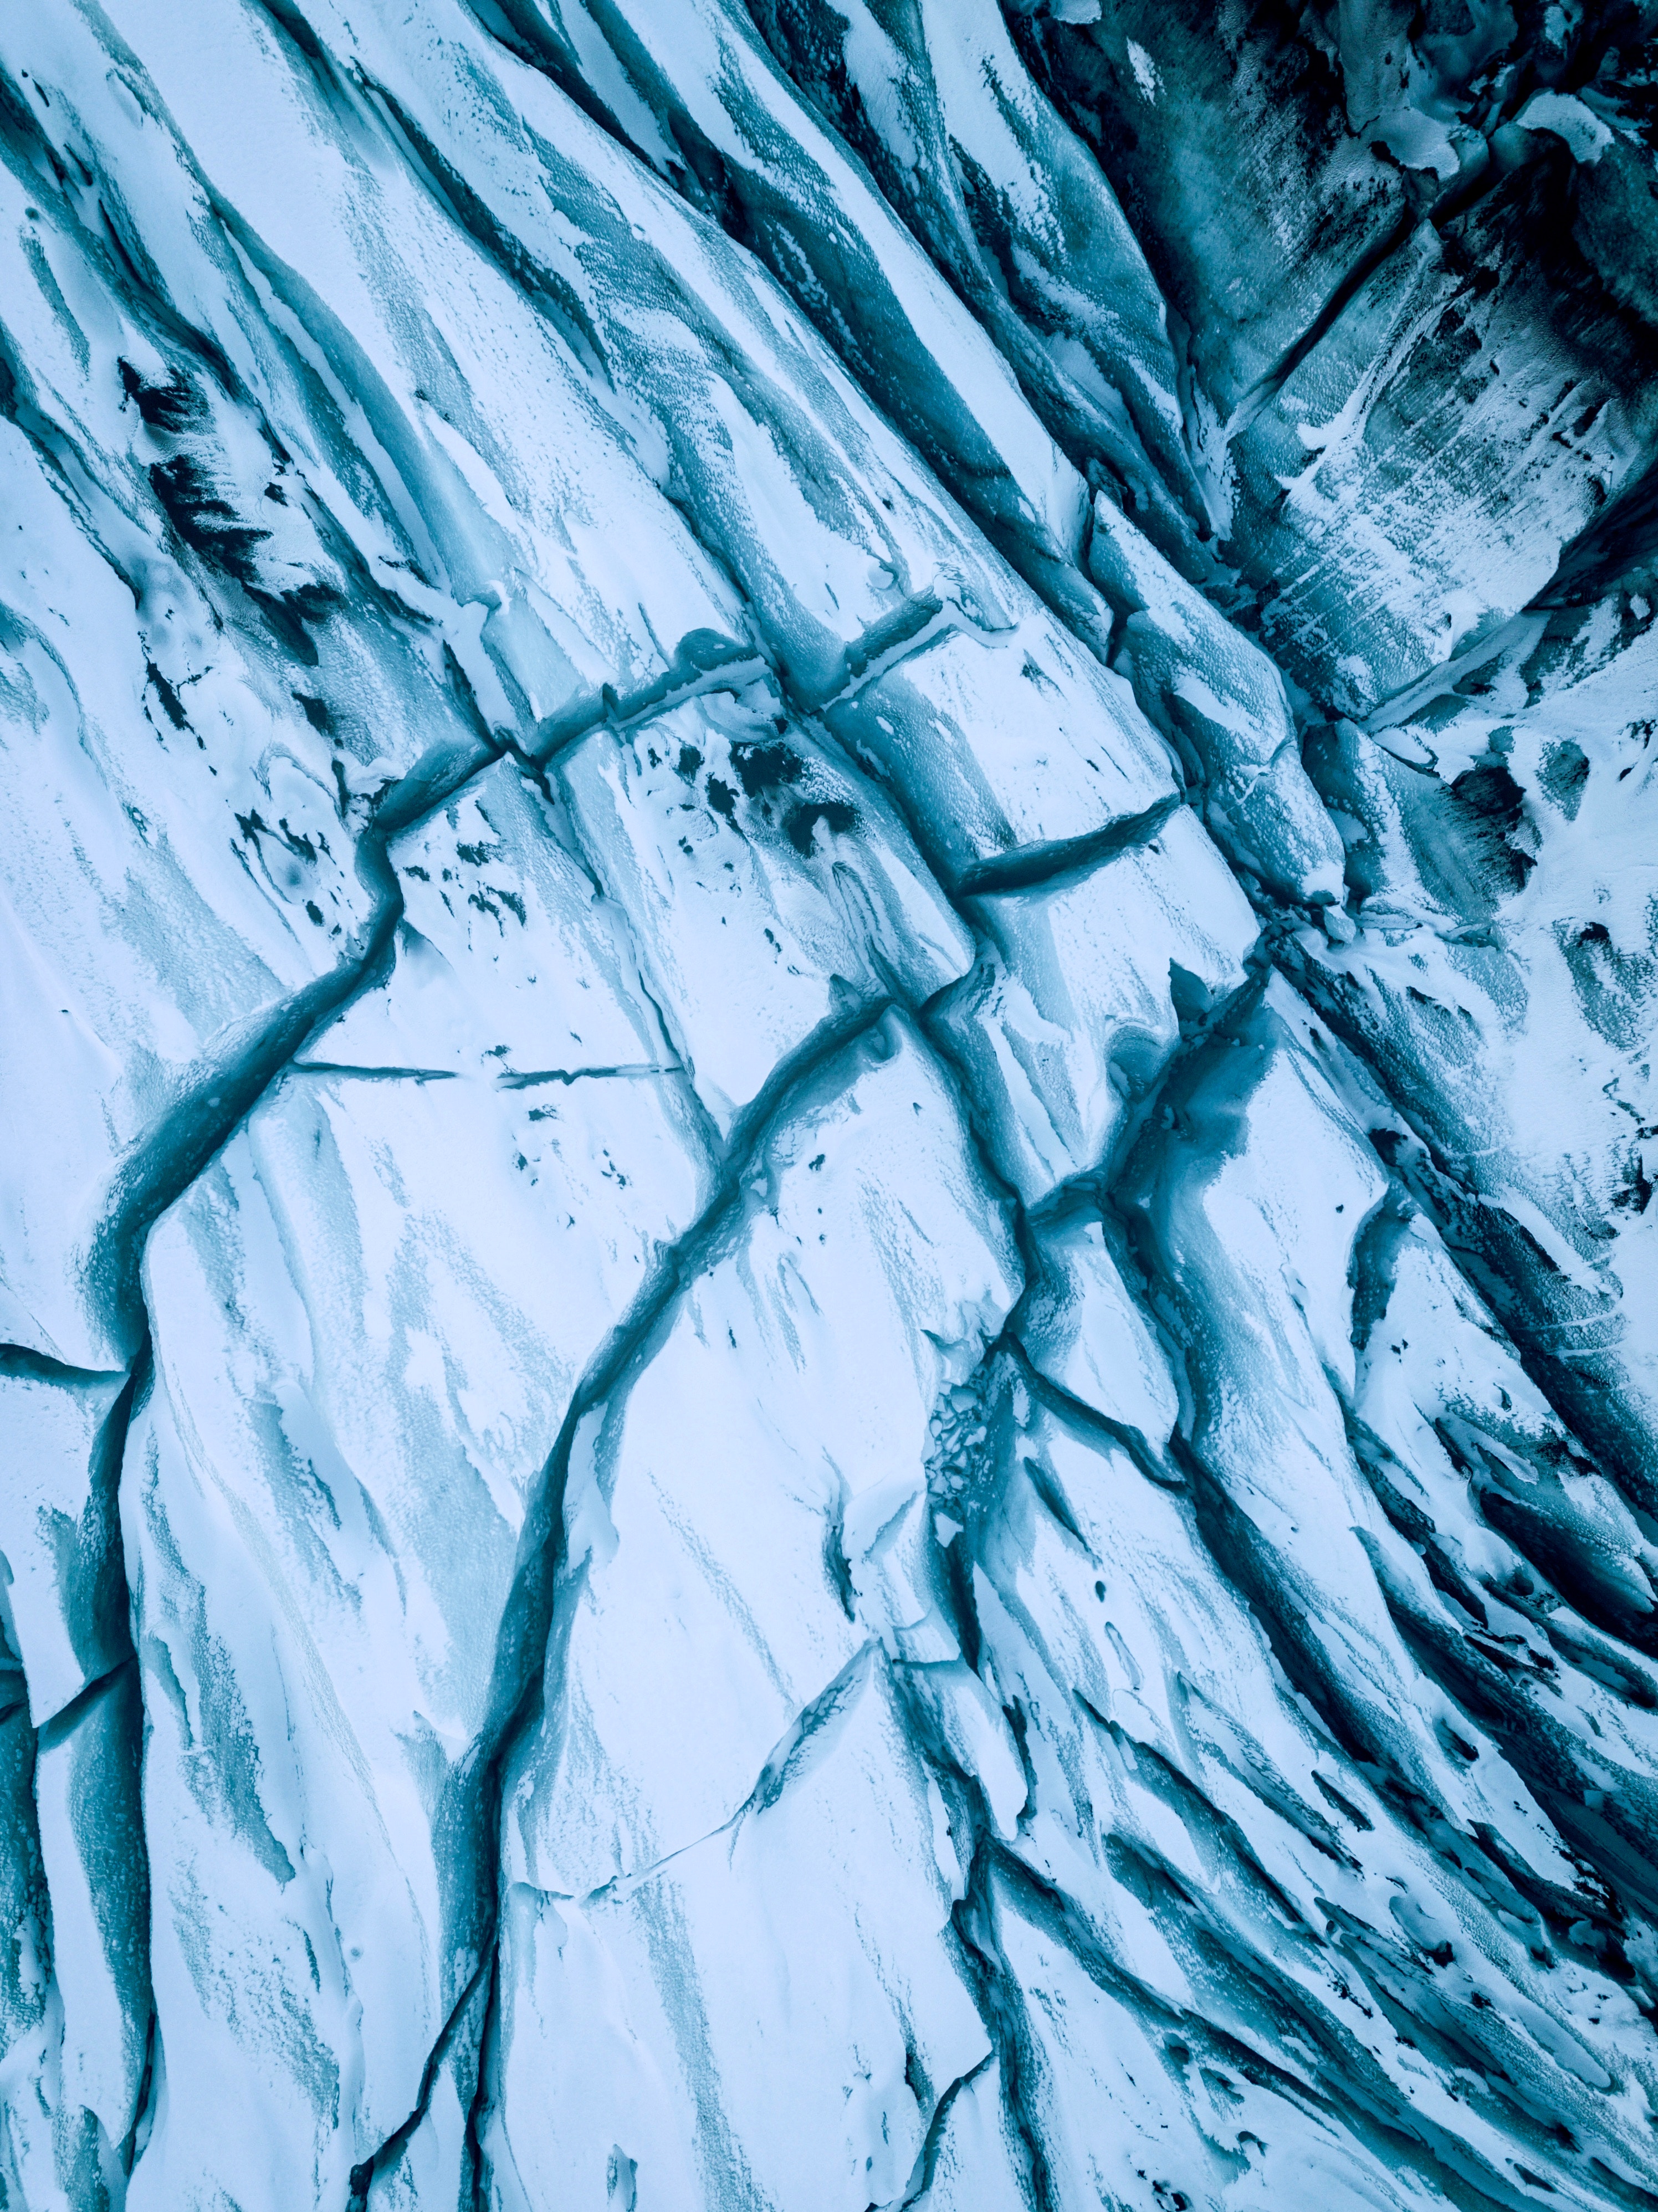 Desktop Backgrounds Glacier crack, ice, cracks, nature